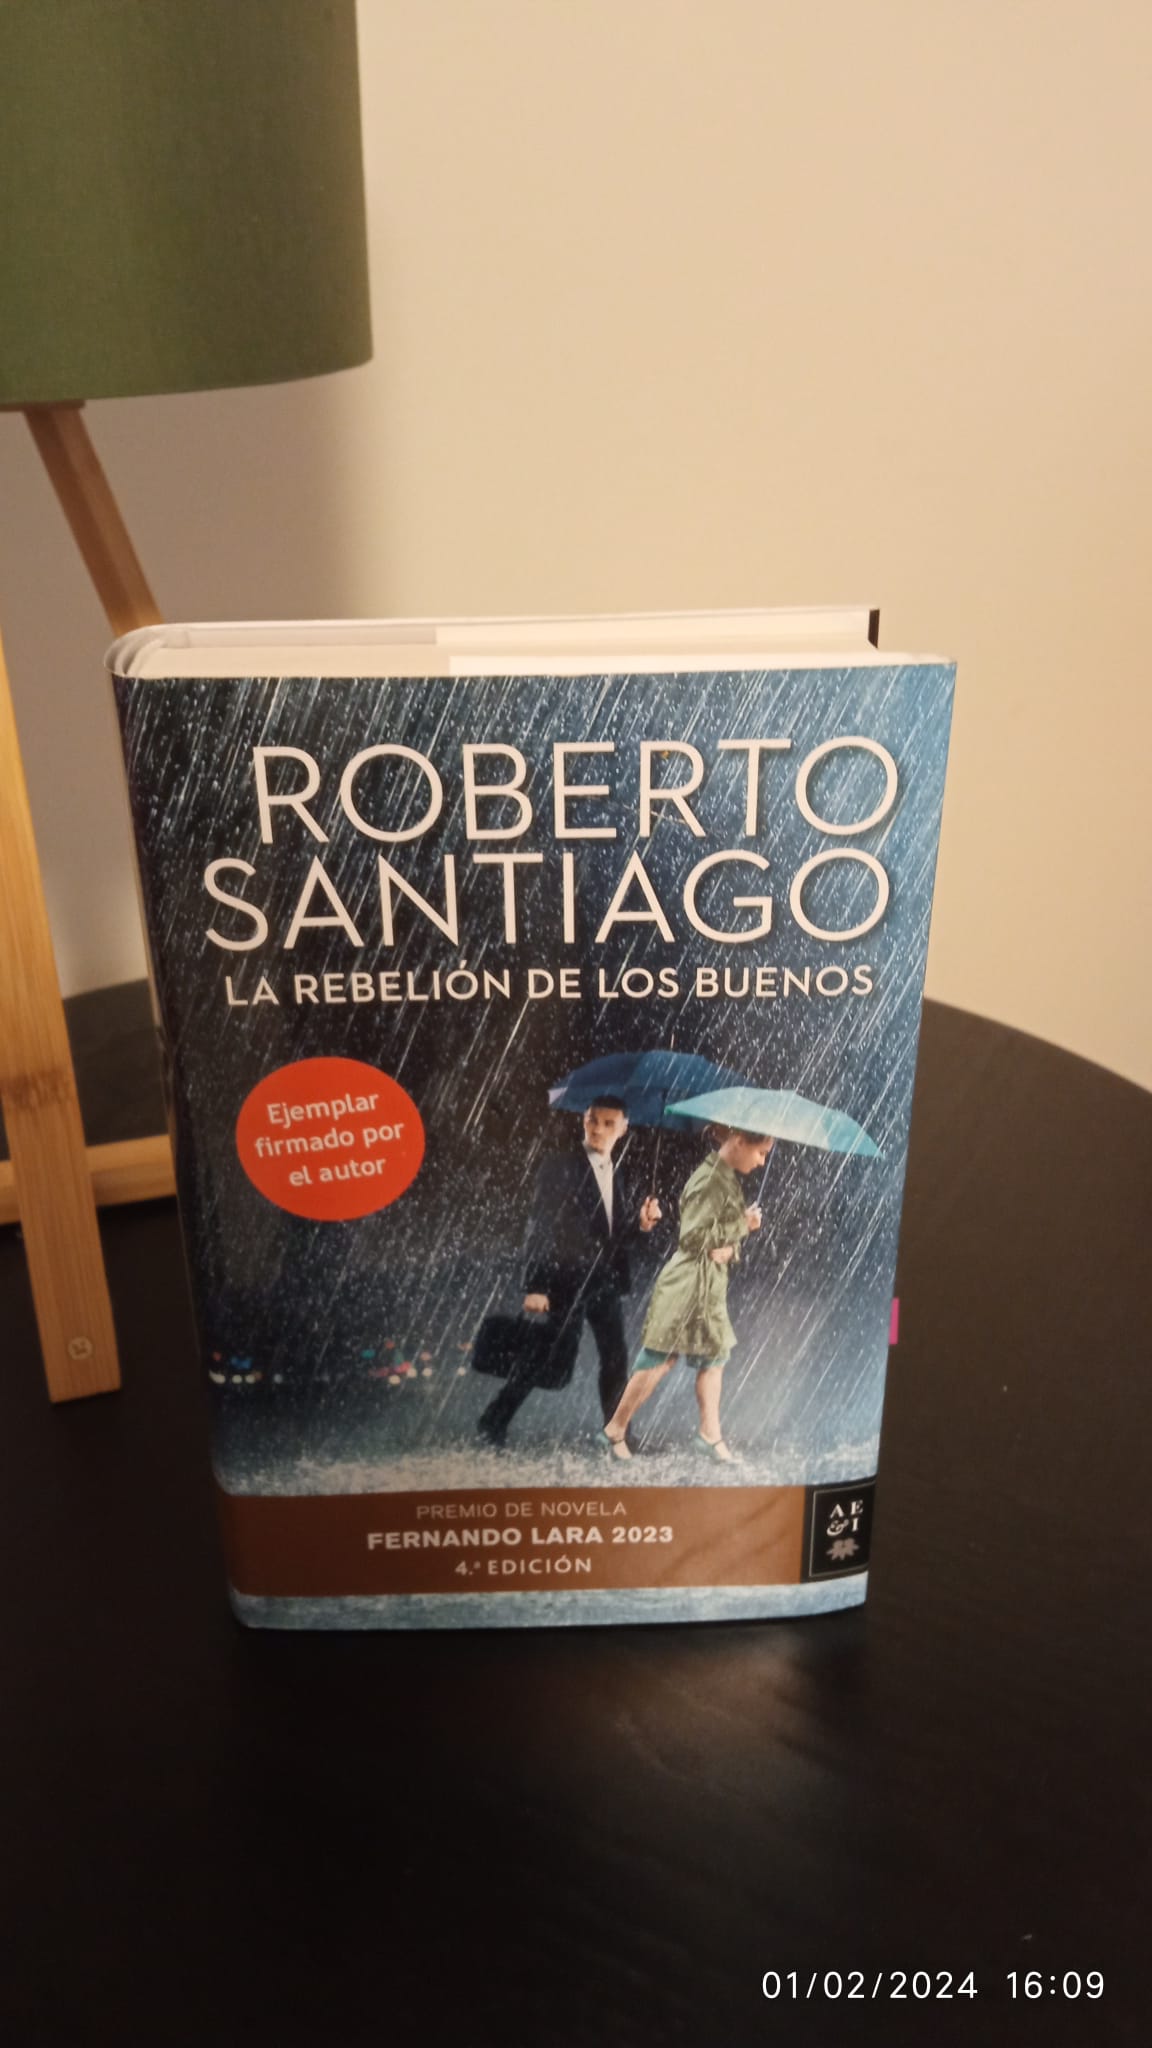 La rebelión de los buenos by Roberto Santiago